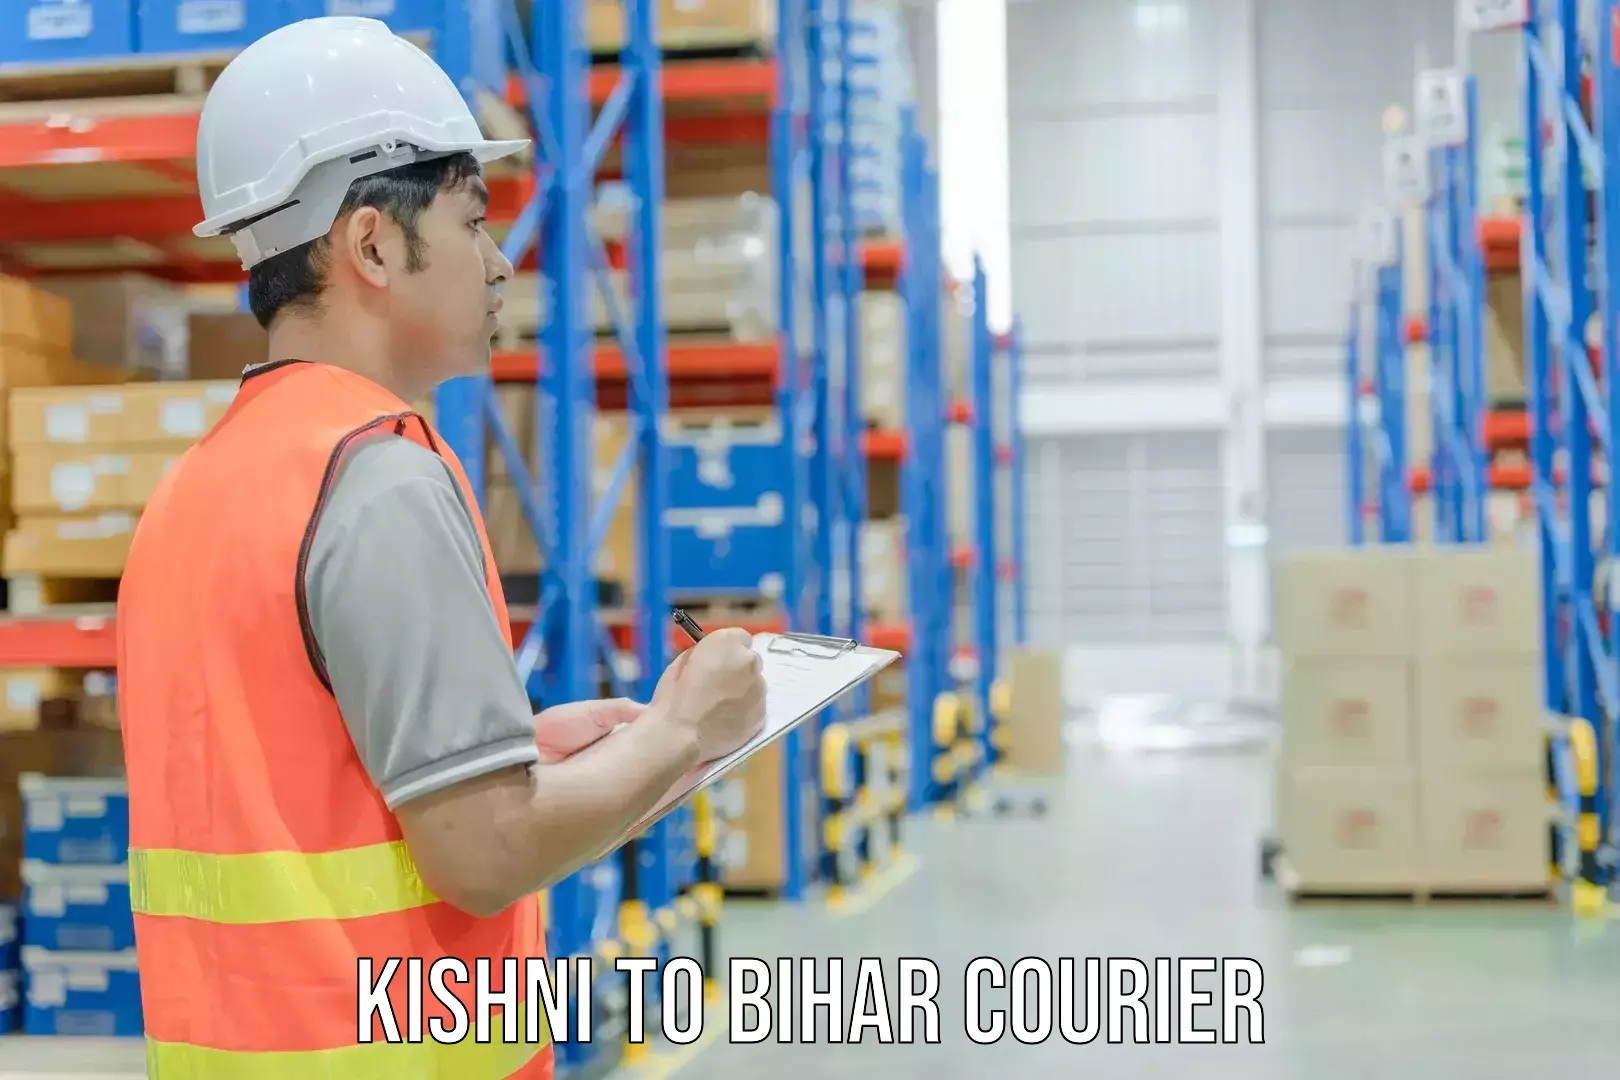 24/7 shipping services Kishni to Vaishali